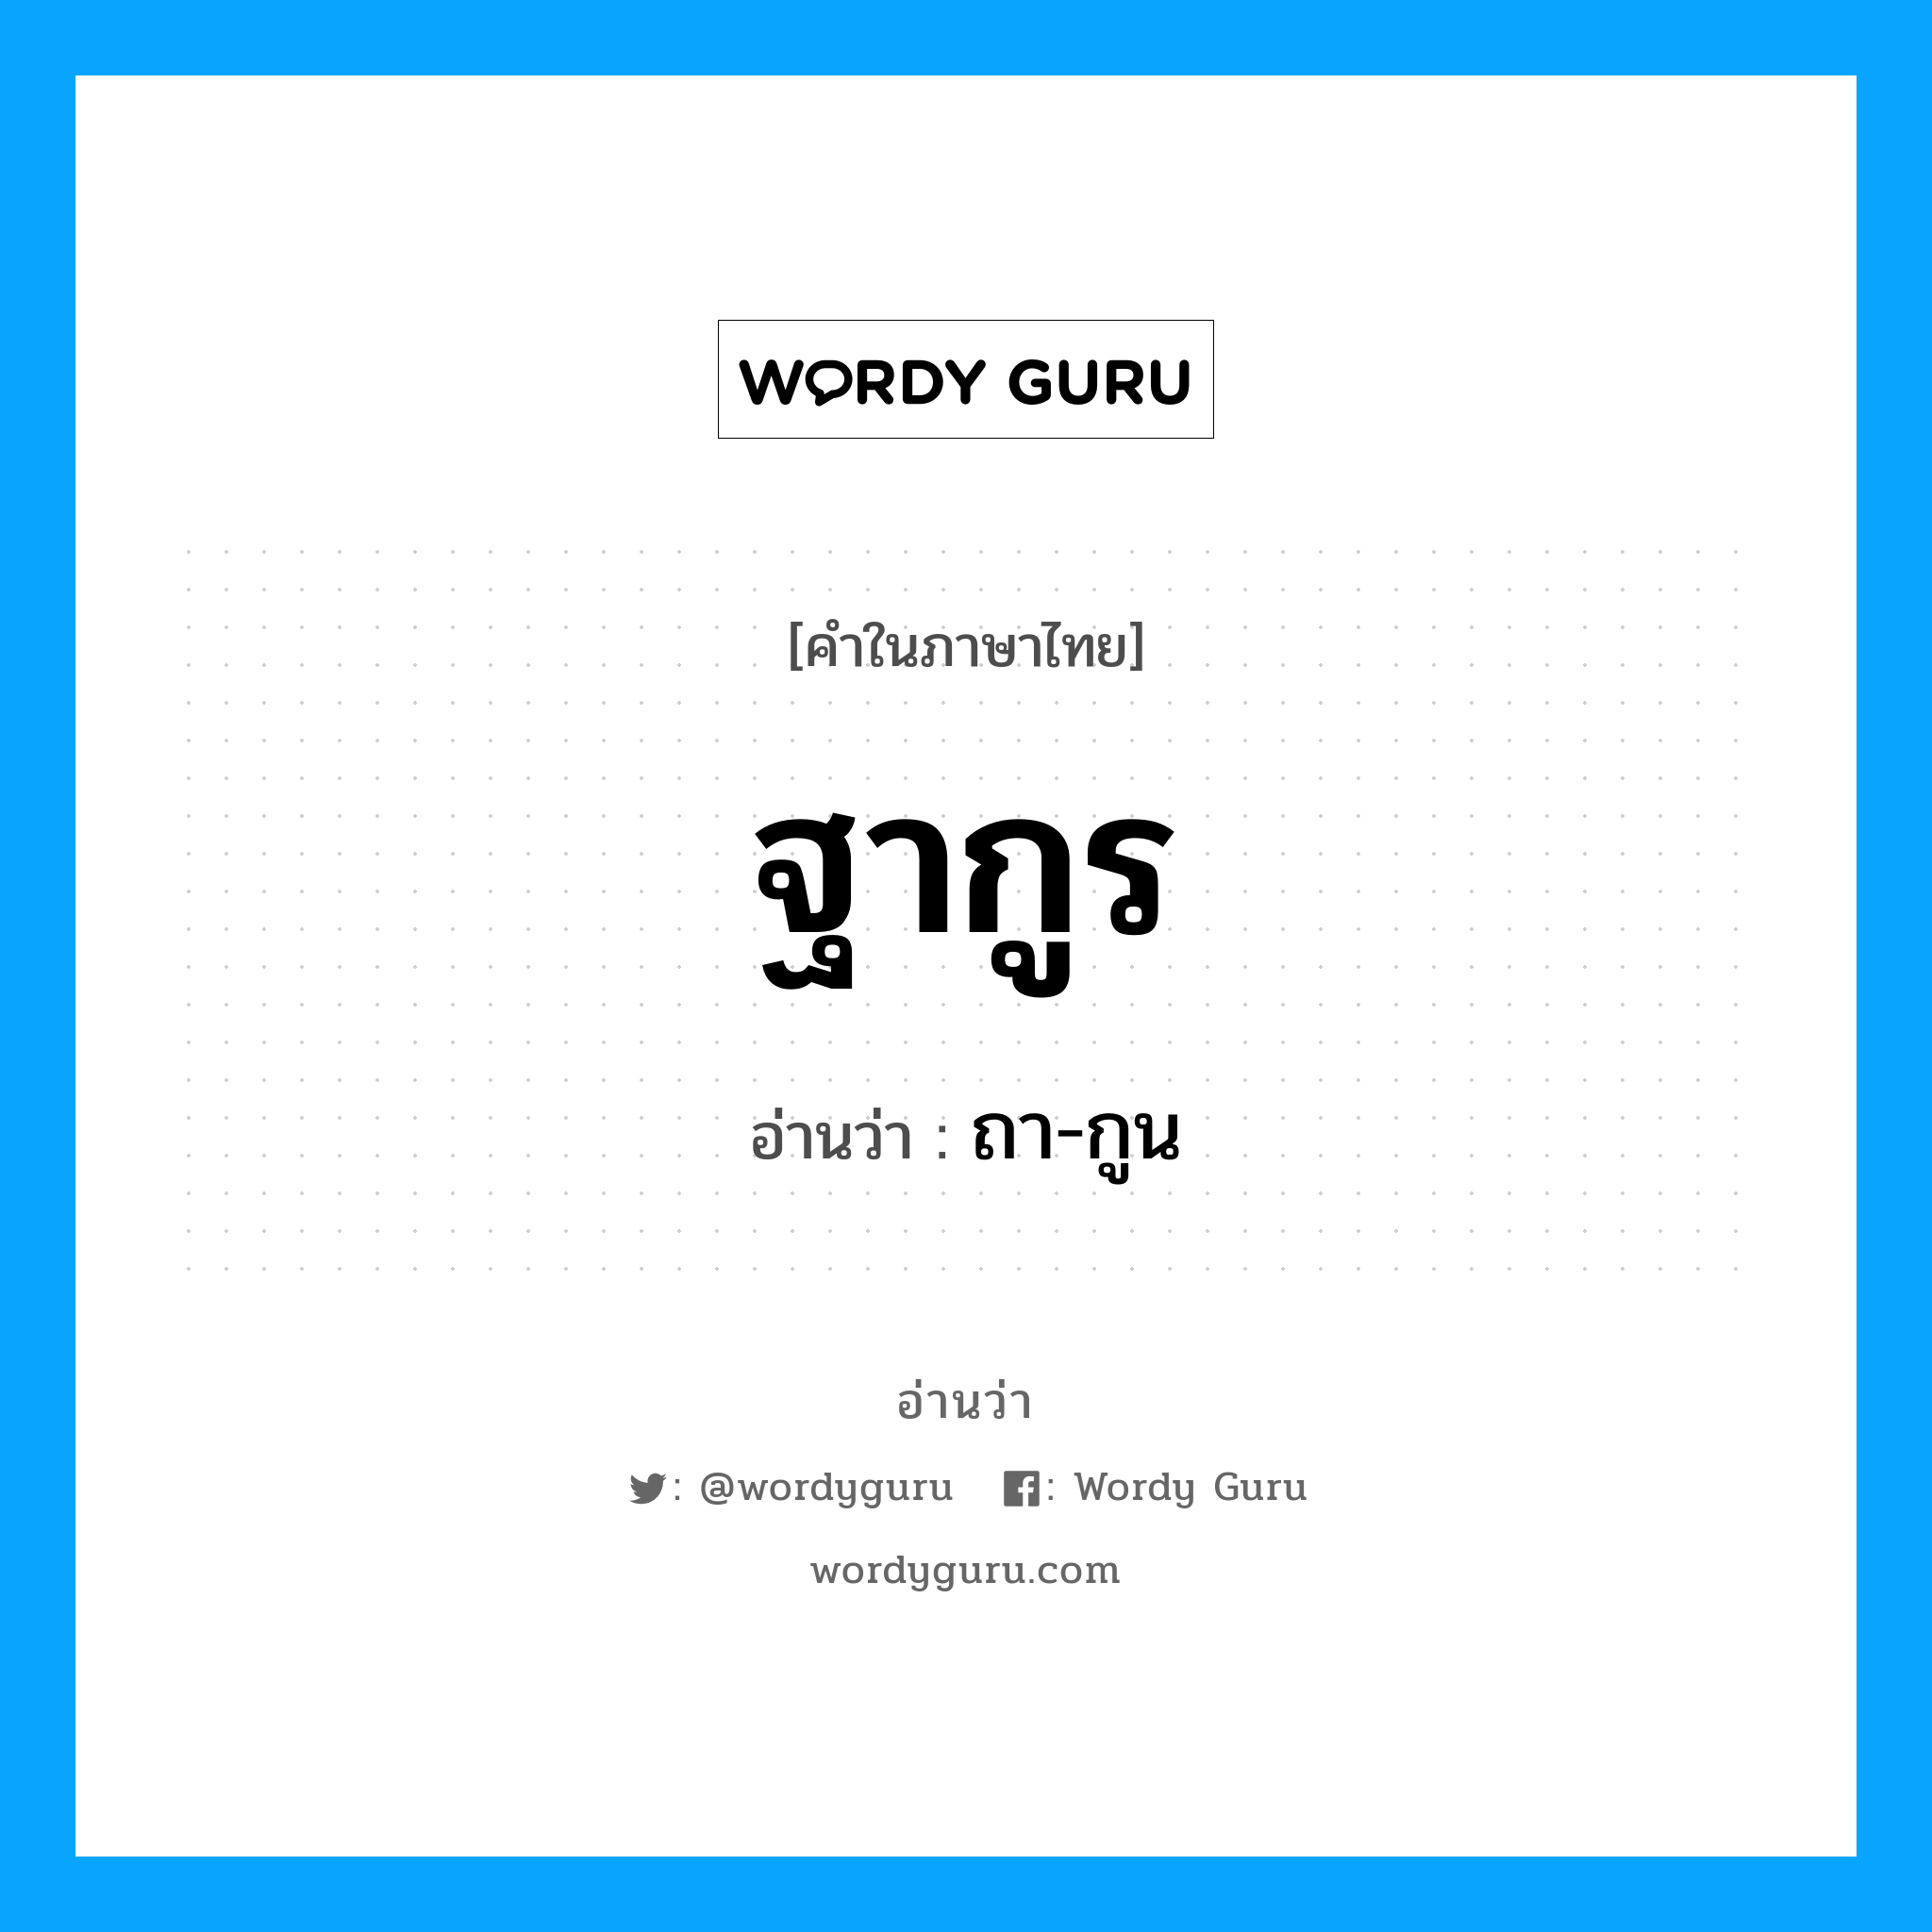 ถา-กูน เป็นคำอ่านของคำไหน?, คำในภาษาไทย ถา-กูน อ่านว่า ฐากูร